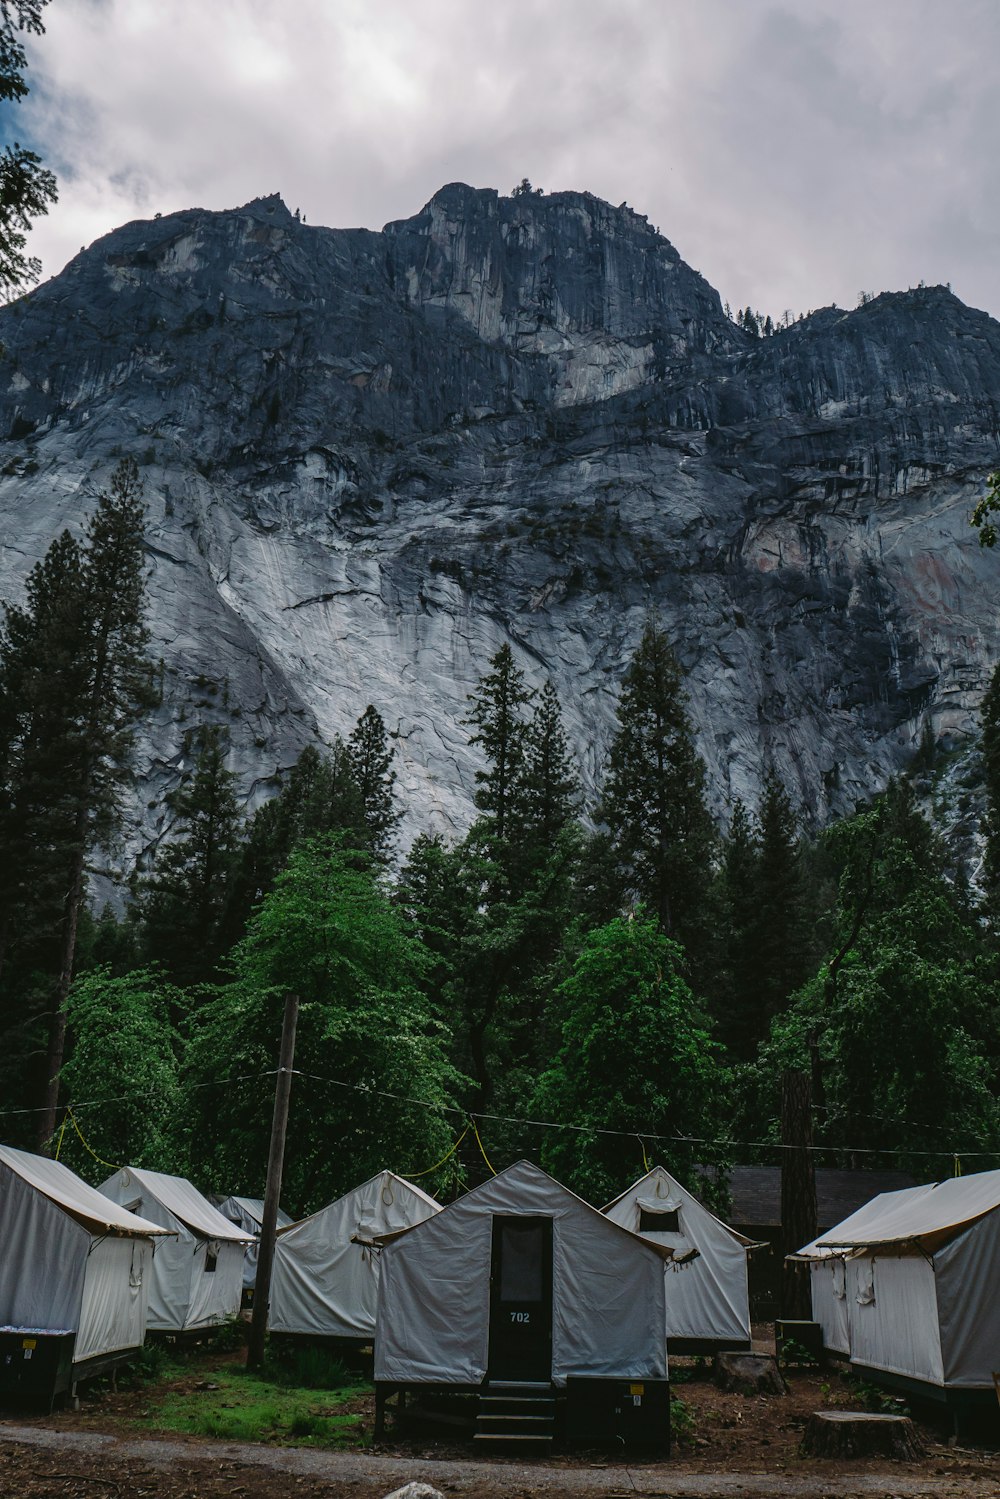 Sehen Sie sich Fotos von Zelten des Weißen Hauses in der Nähe von Bäumen unter dem schwarzen und grauen Berg an